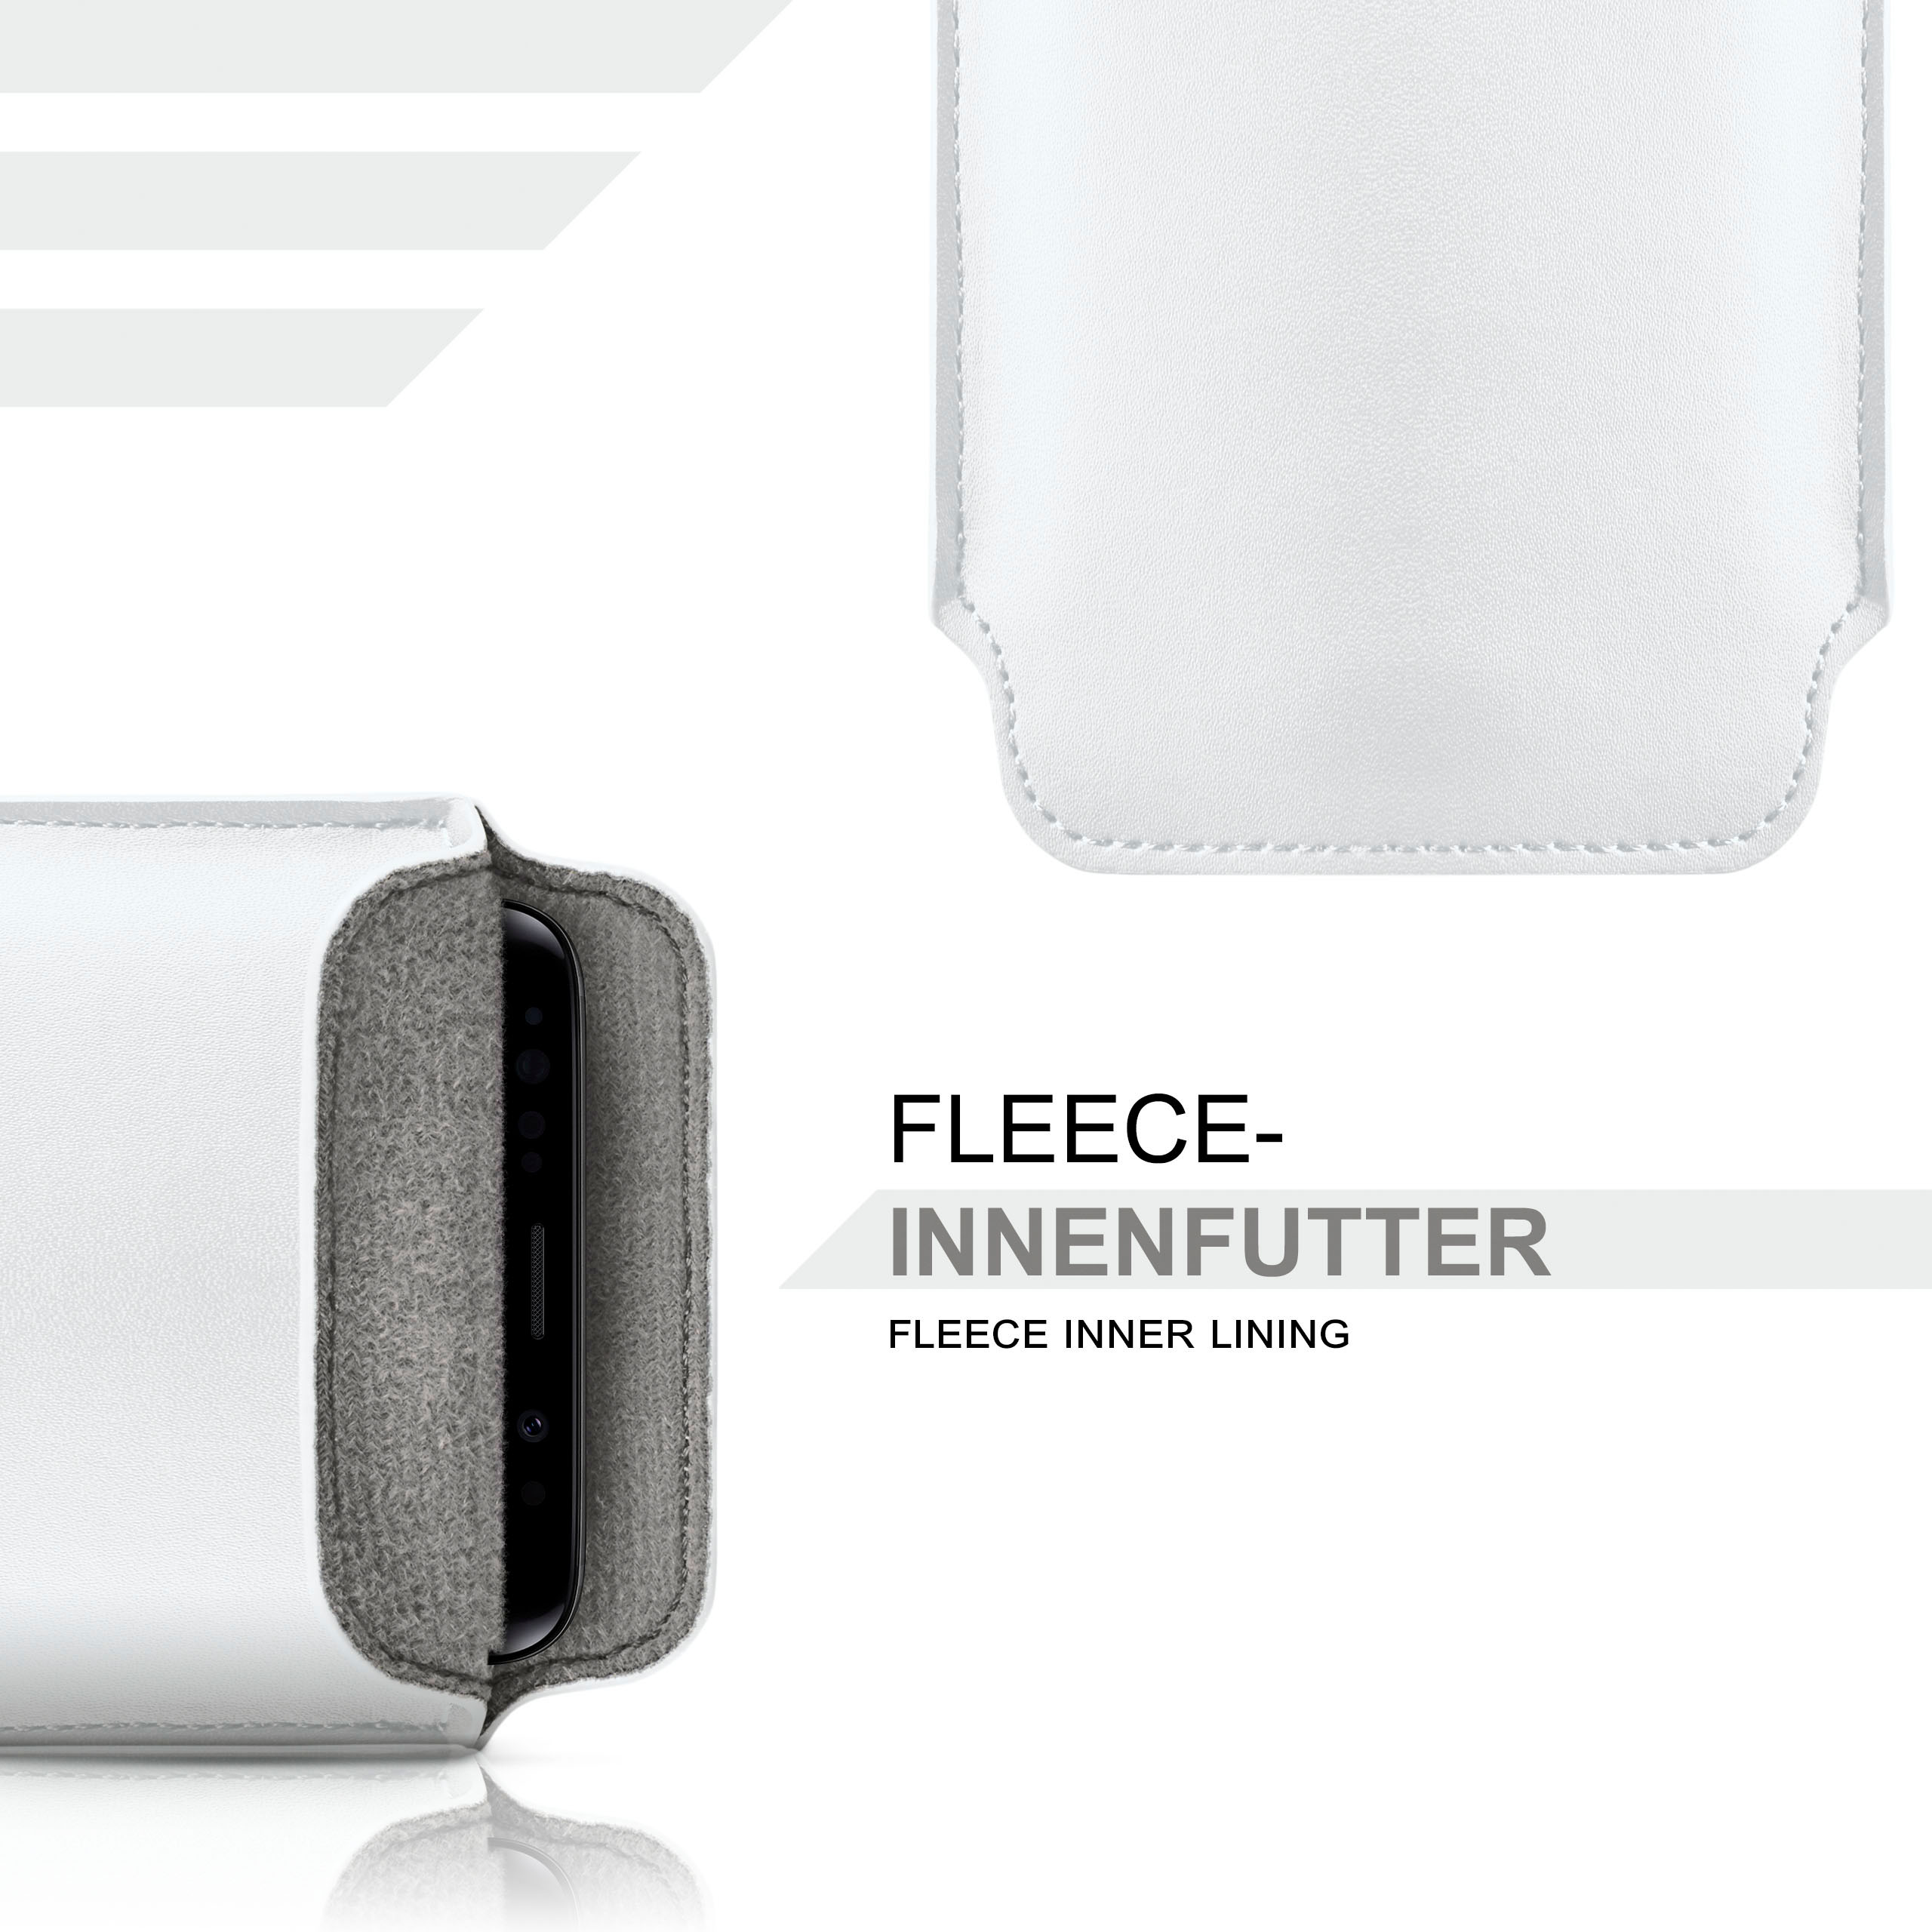 Shiny-White Full Cover, 5.1, Case, MOEX Slide Nokia,